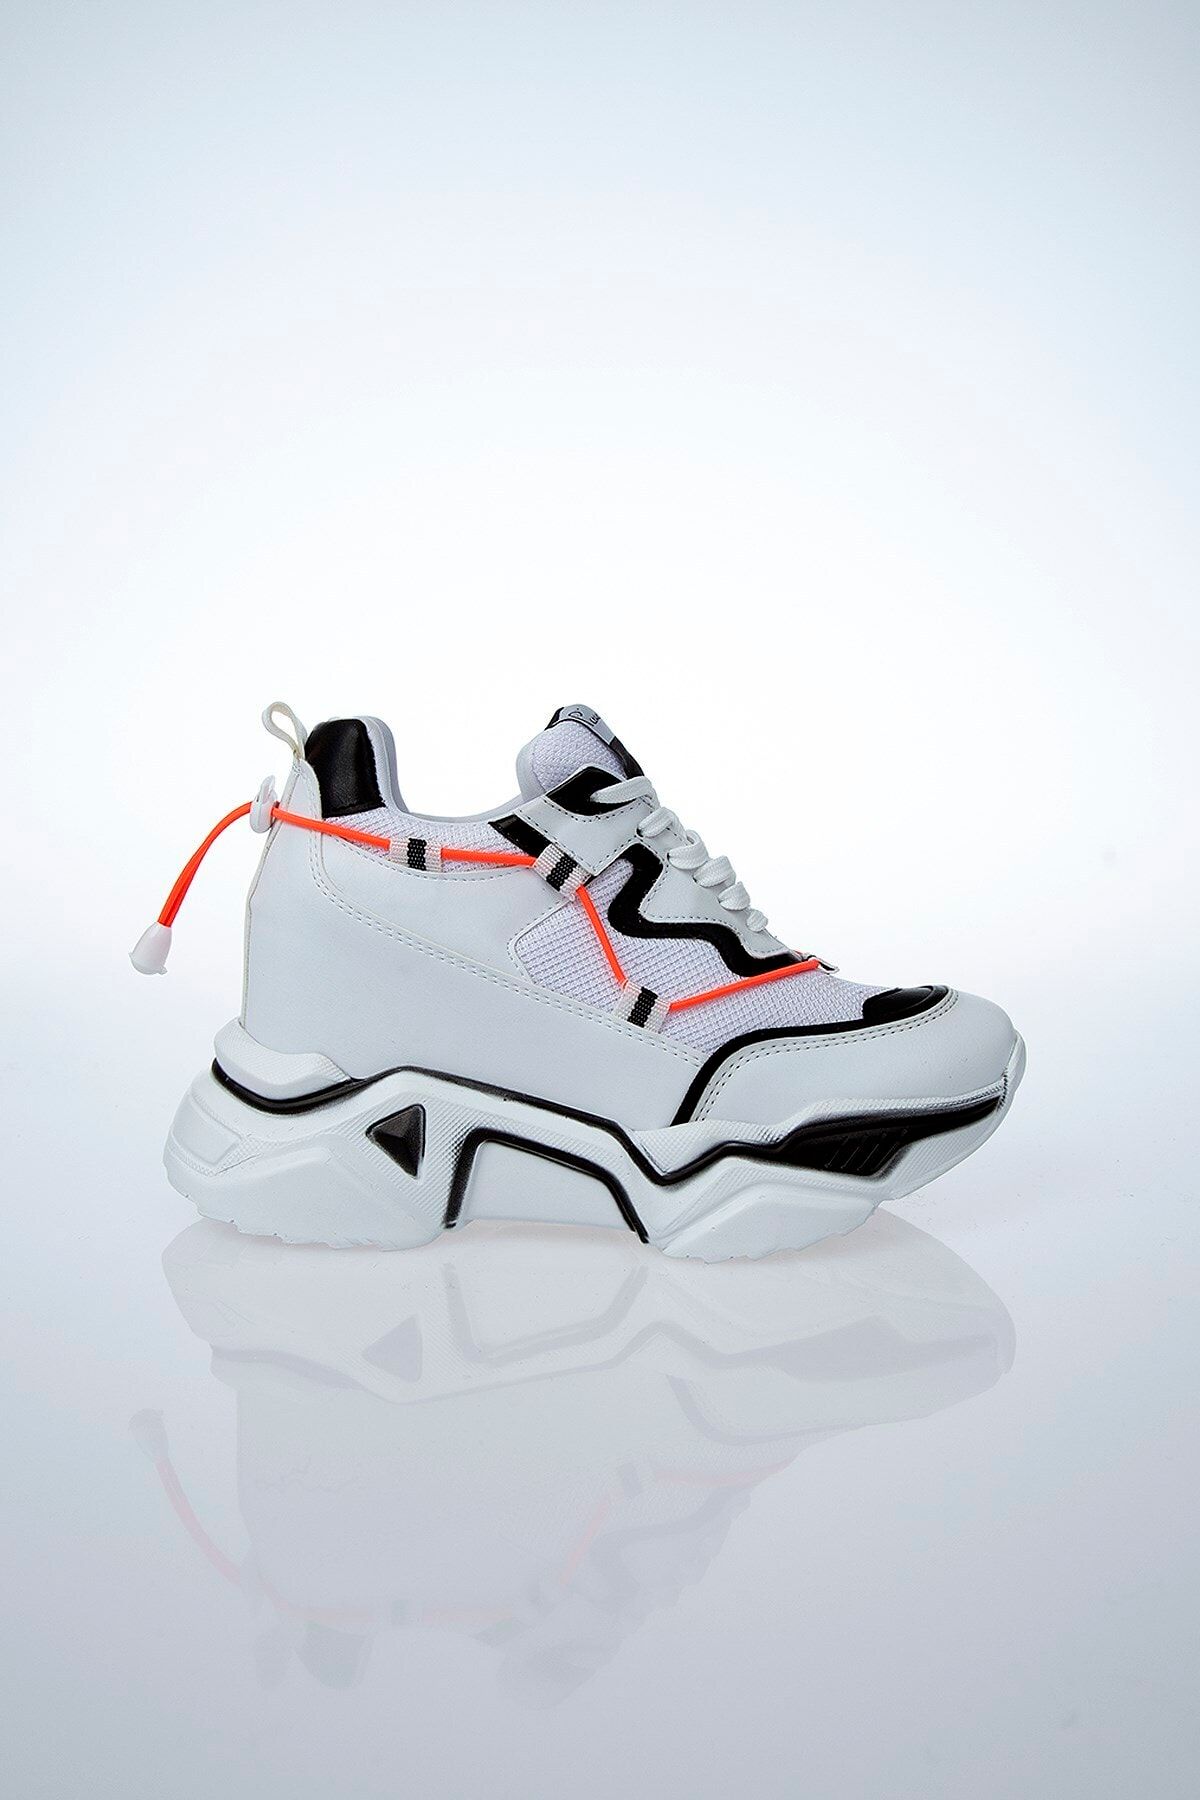 Pierre Cardin Pc-30192 Beyaz-siyah Kadın Spor Ayakkabı